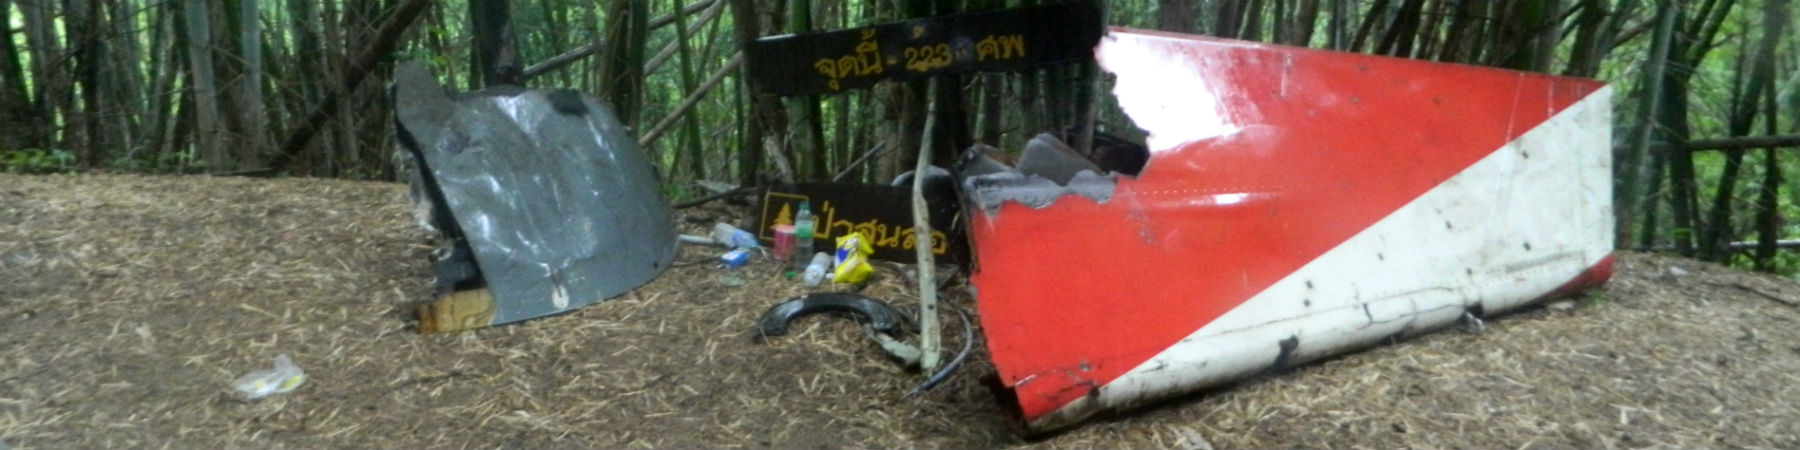 Lauda Air Flight 004 Crash Site, Dan Chang District, Suphanburi Province